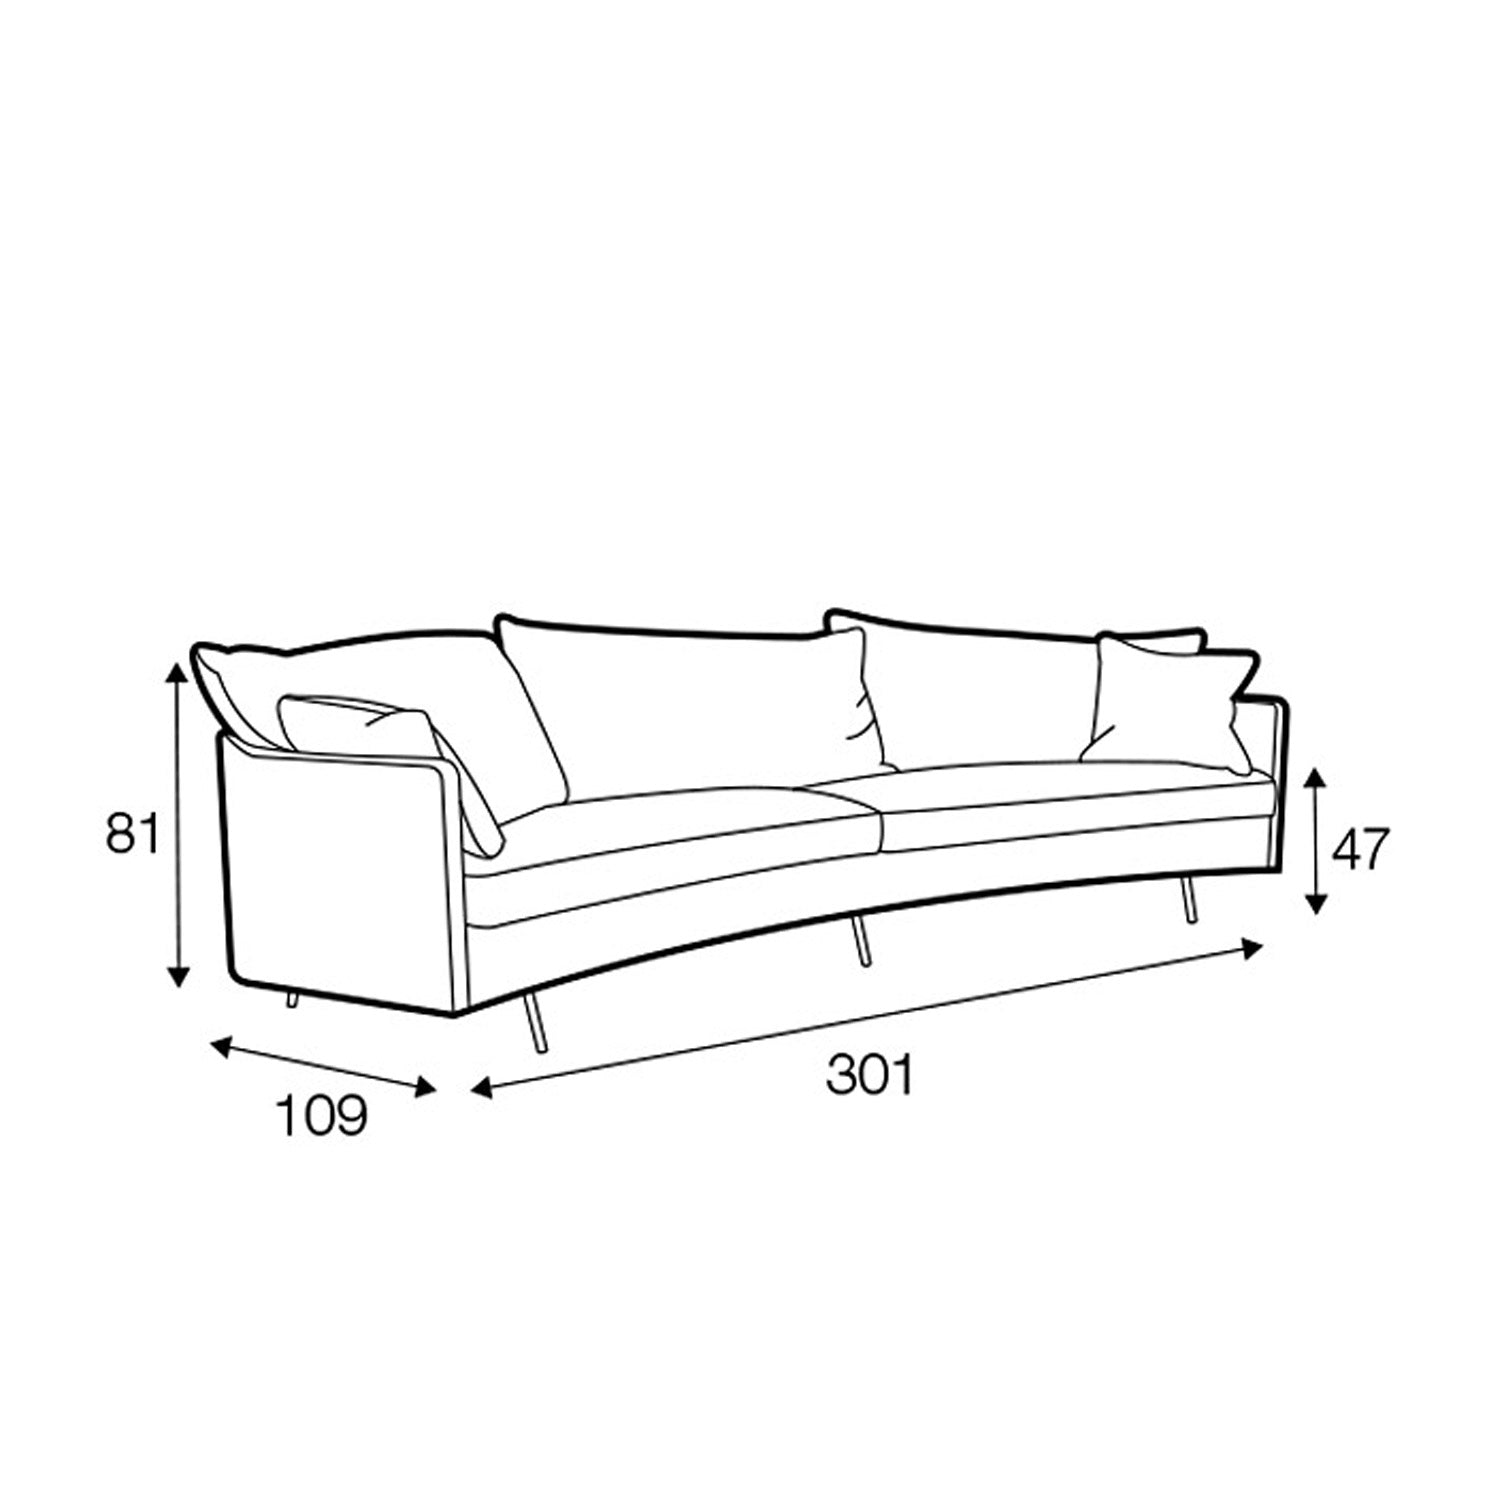 Julia 4-seter XL sofa round, en del av kategorien 4-seter - At Home Interiør